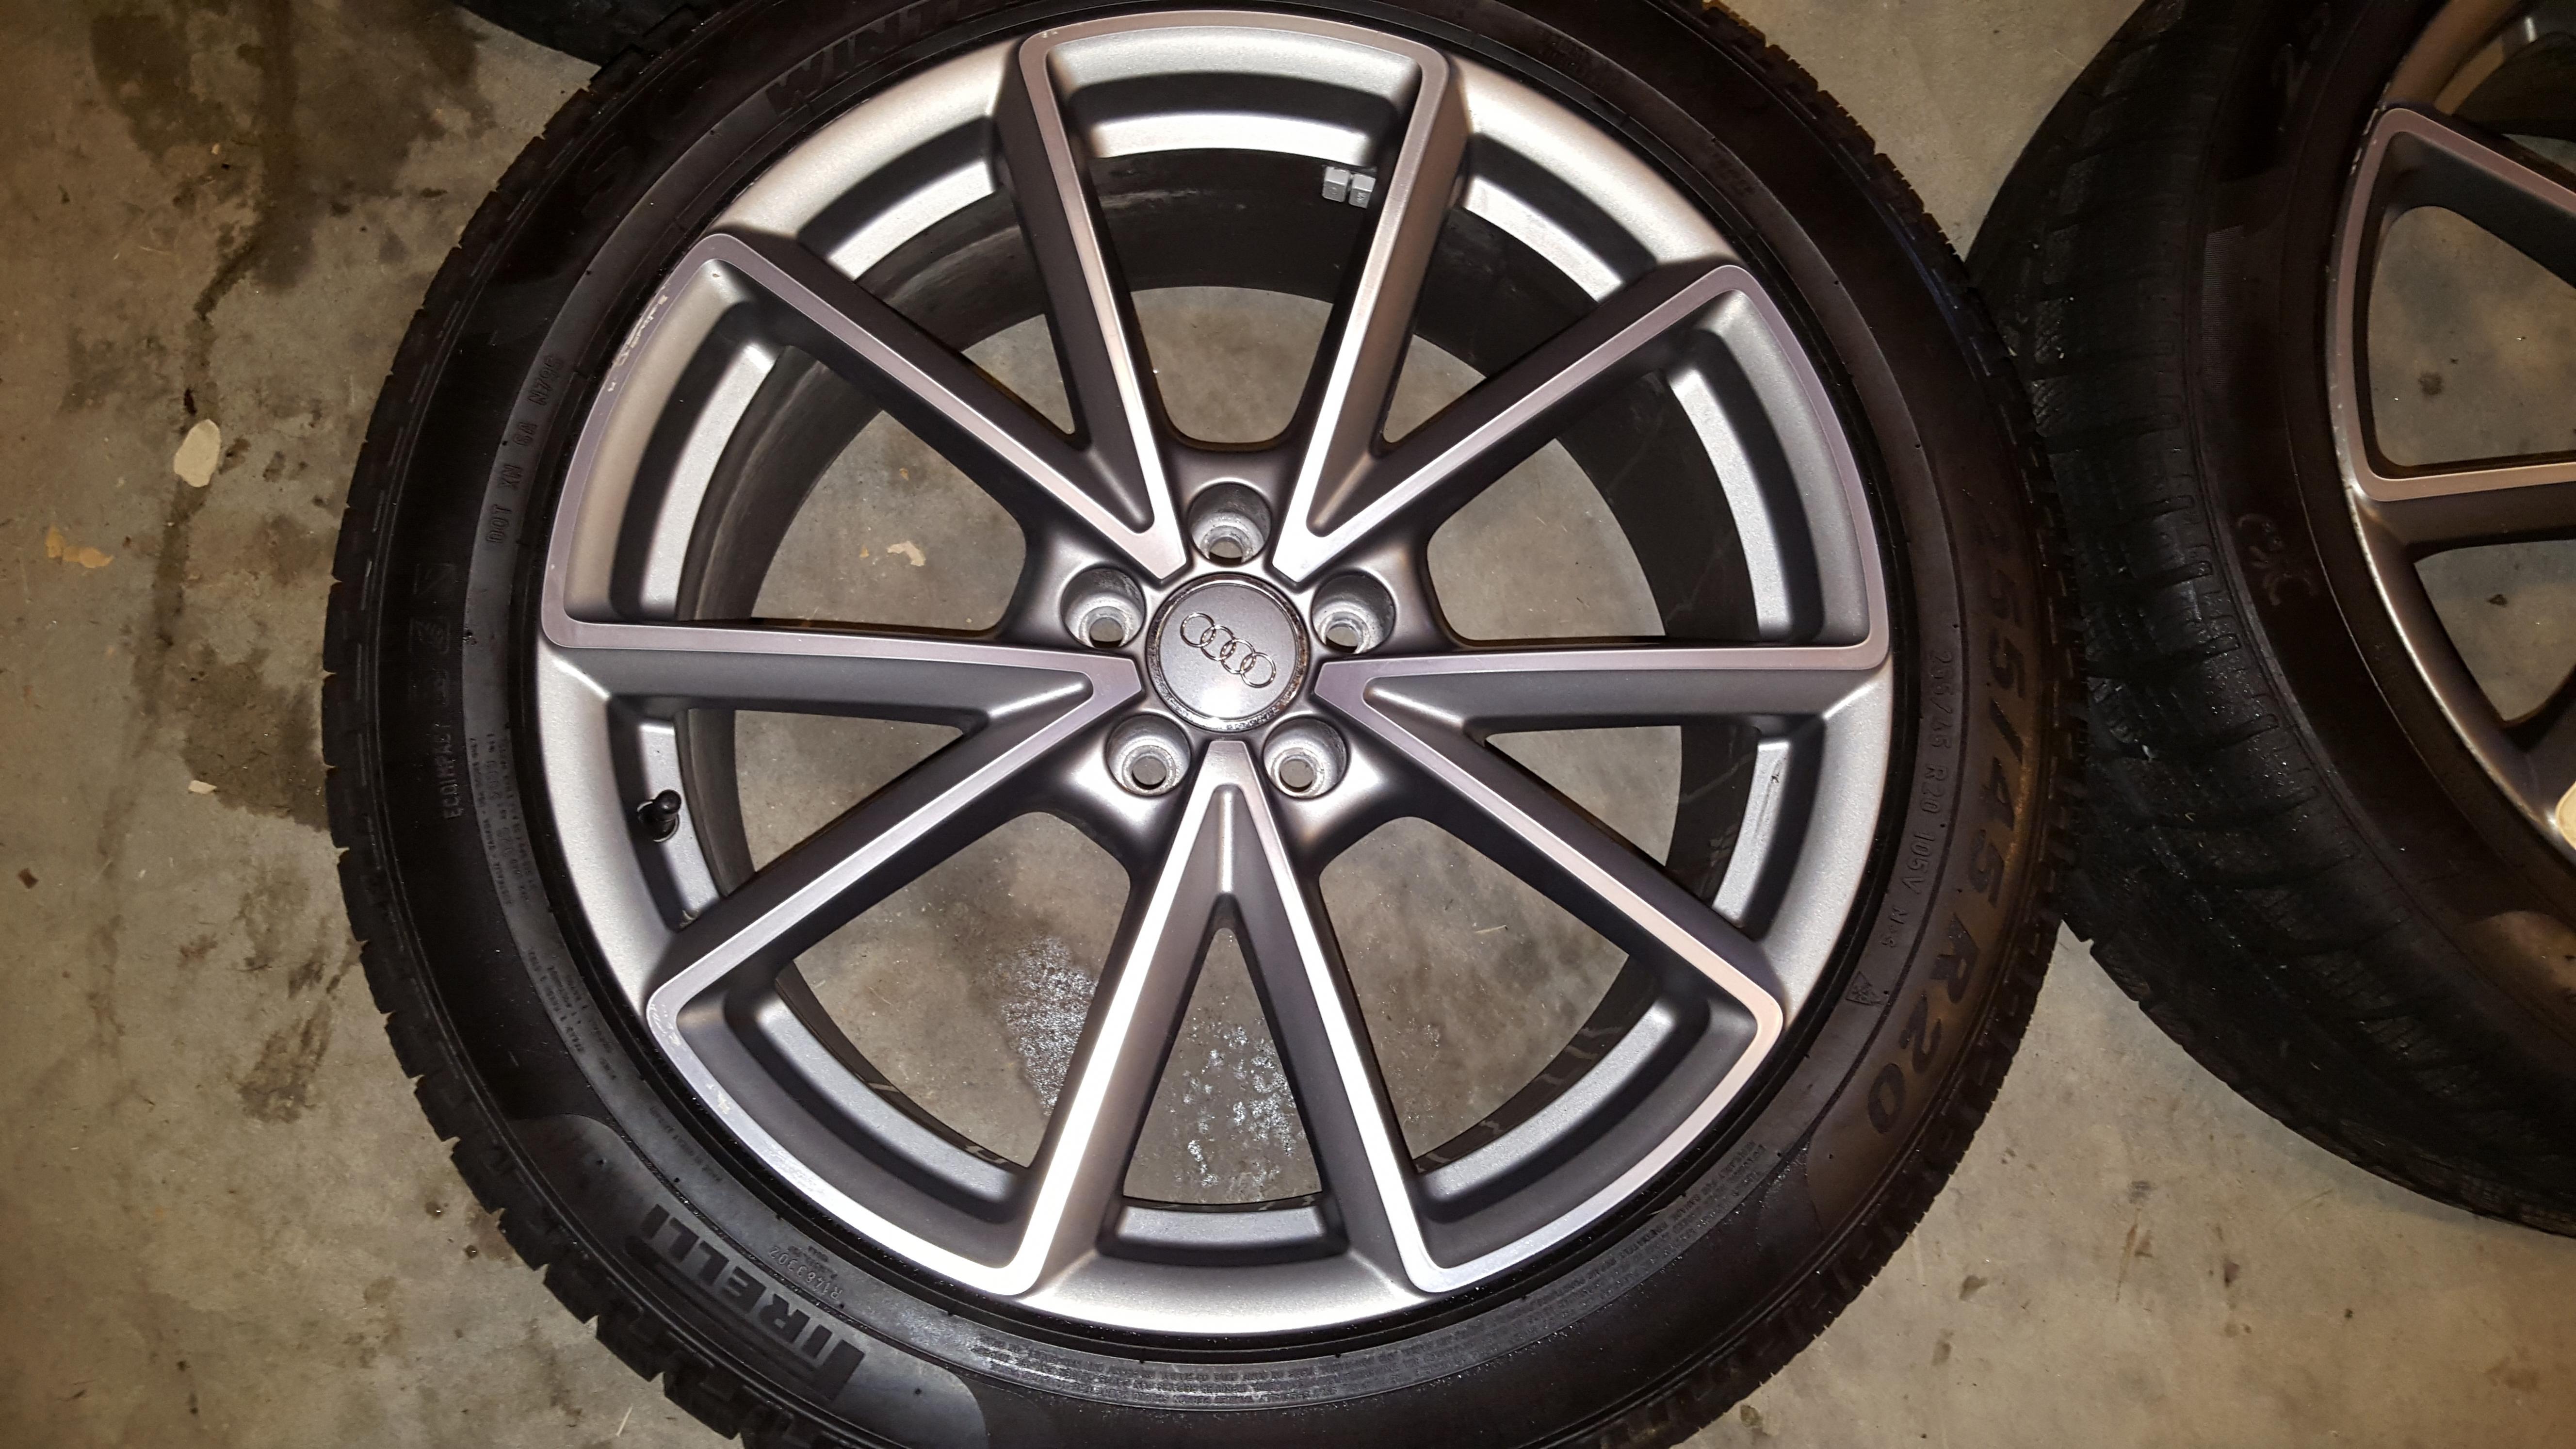 SQ5 Wheels - Genuine & Perfect Condition 20x8.5 et33 - AudiForums.com